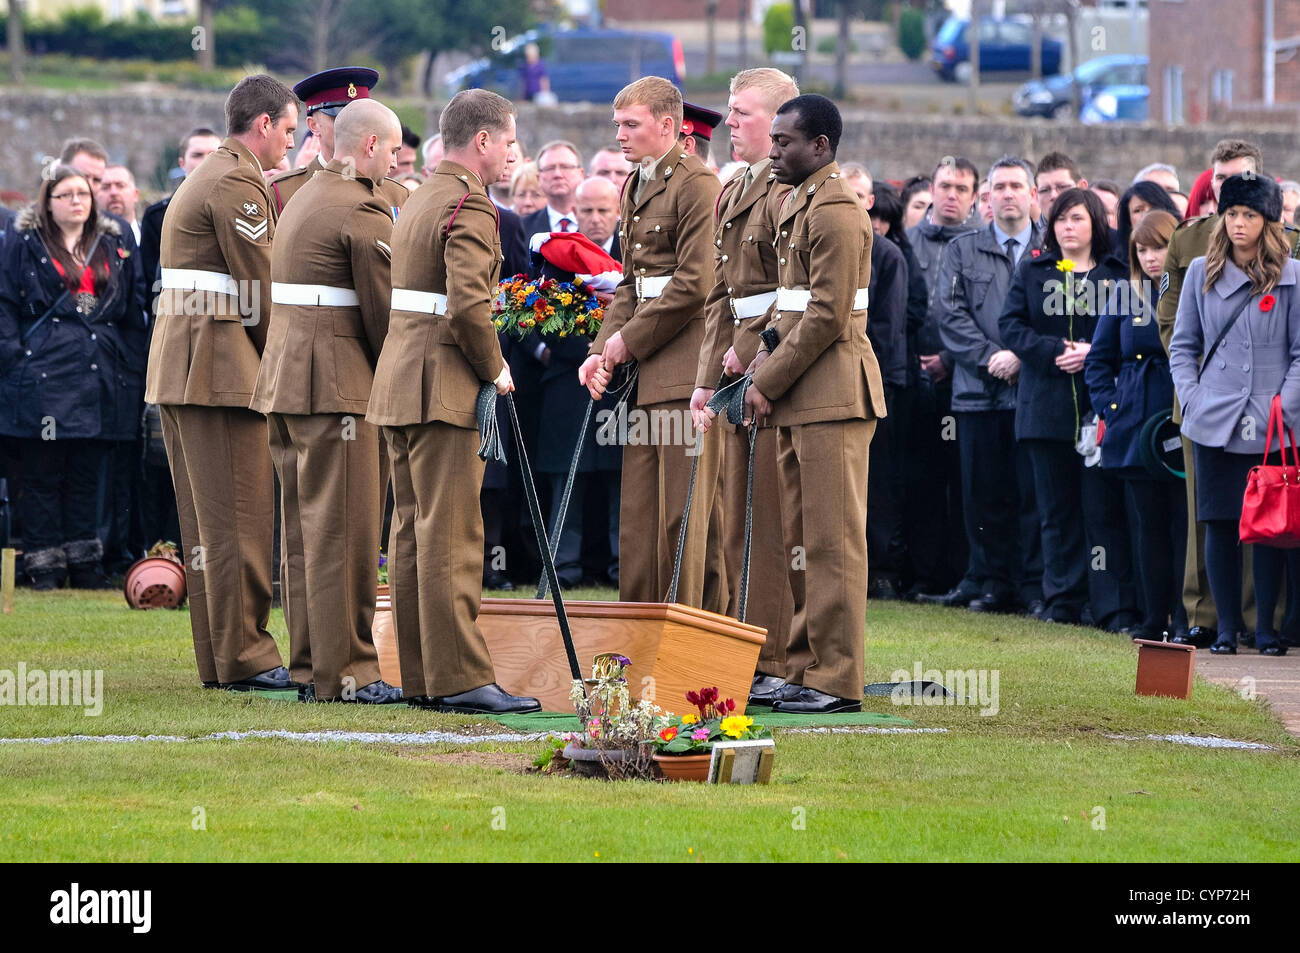 8 novembre 2012, Comber, Irlande du Nord. Plus de 1000 personnes ont assisté aux funérailles du Caporal Channing (25) du 3 régiment médical, qui a été mortellement blessé lors d'une fusillade en service en Afghanistan.Elle est la troisième femme britannique à sont morts en service en Afghanistan depuis 2001. Banque D'Images